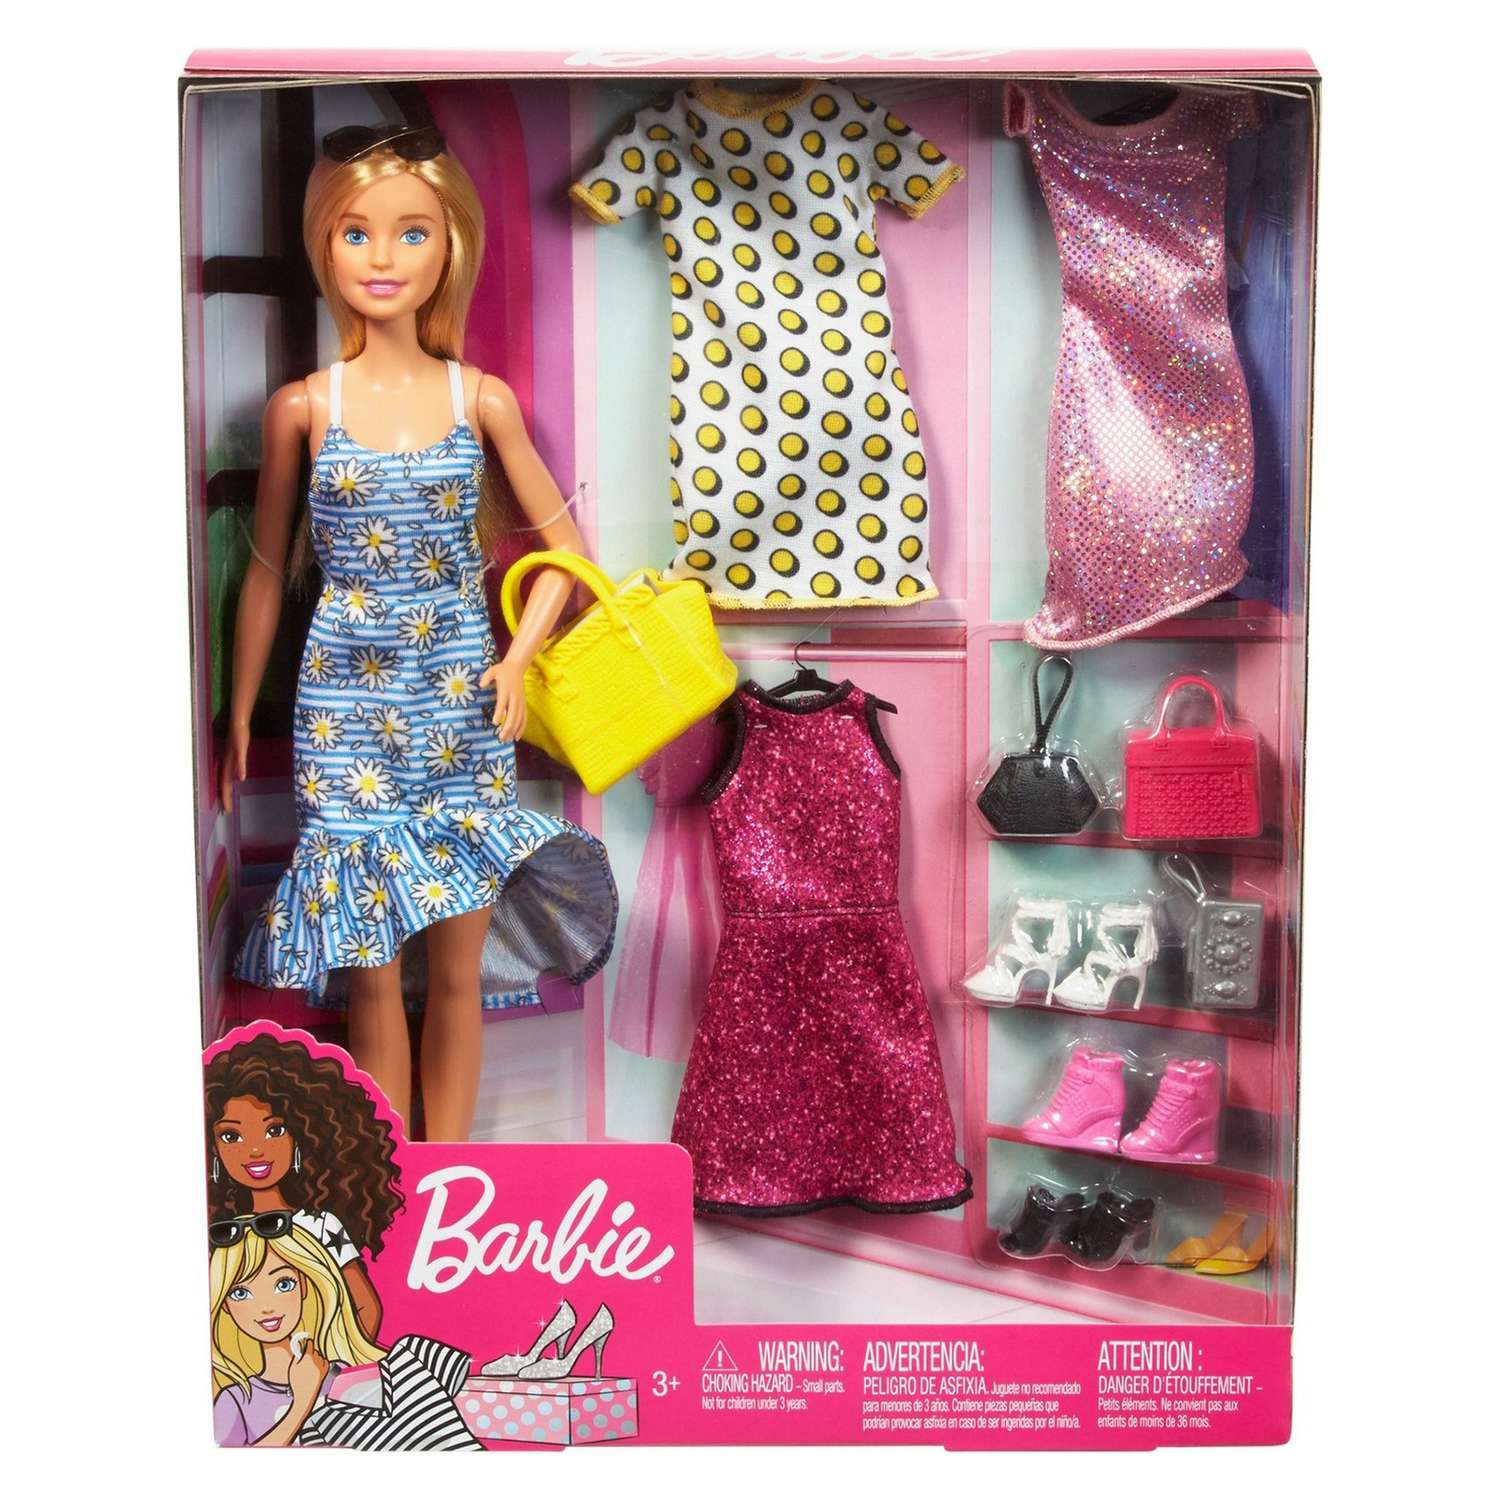 Куклы Барби